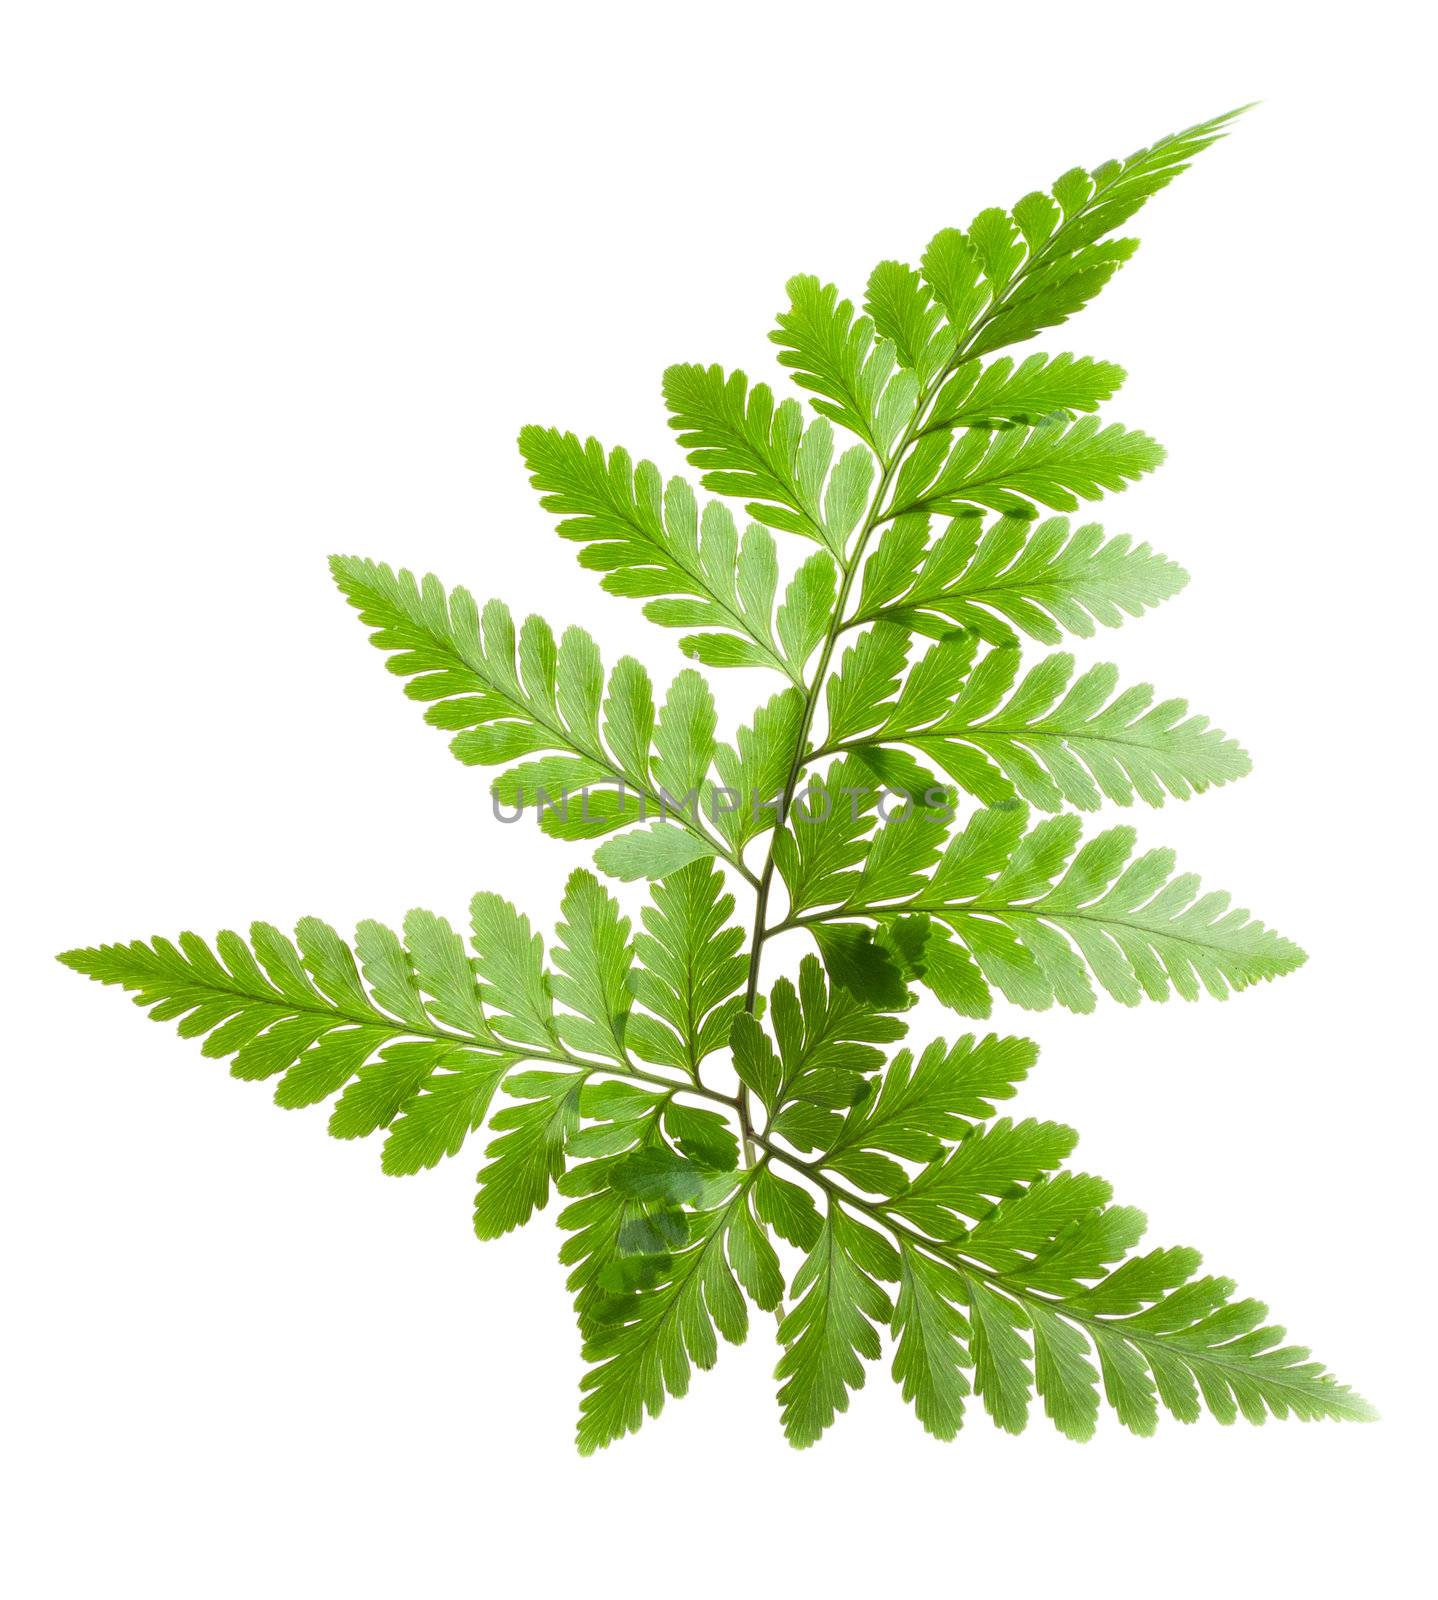 fern leaf by tehcheesiong